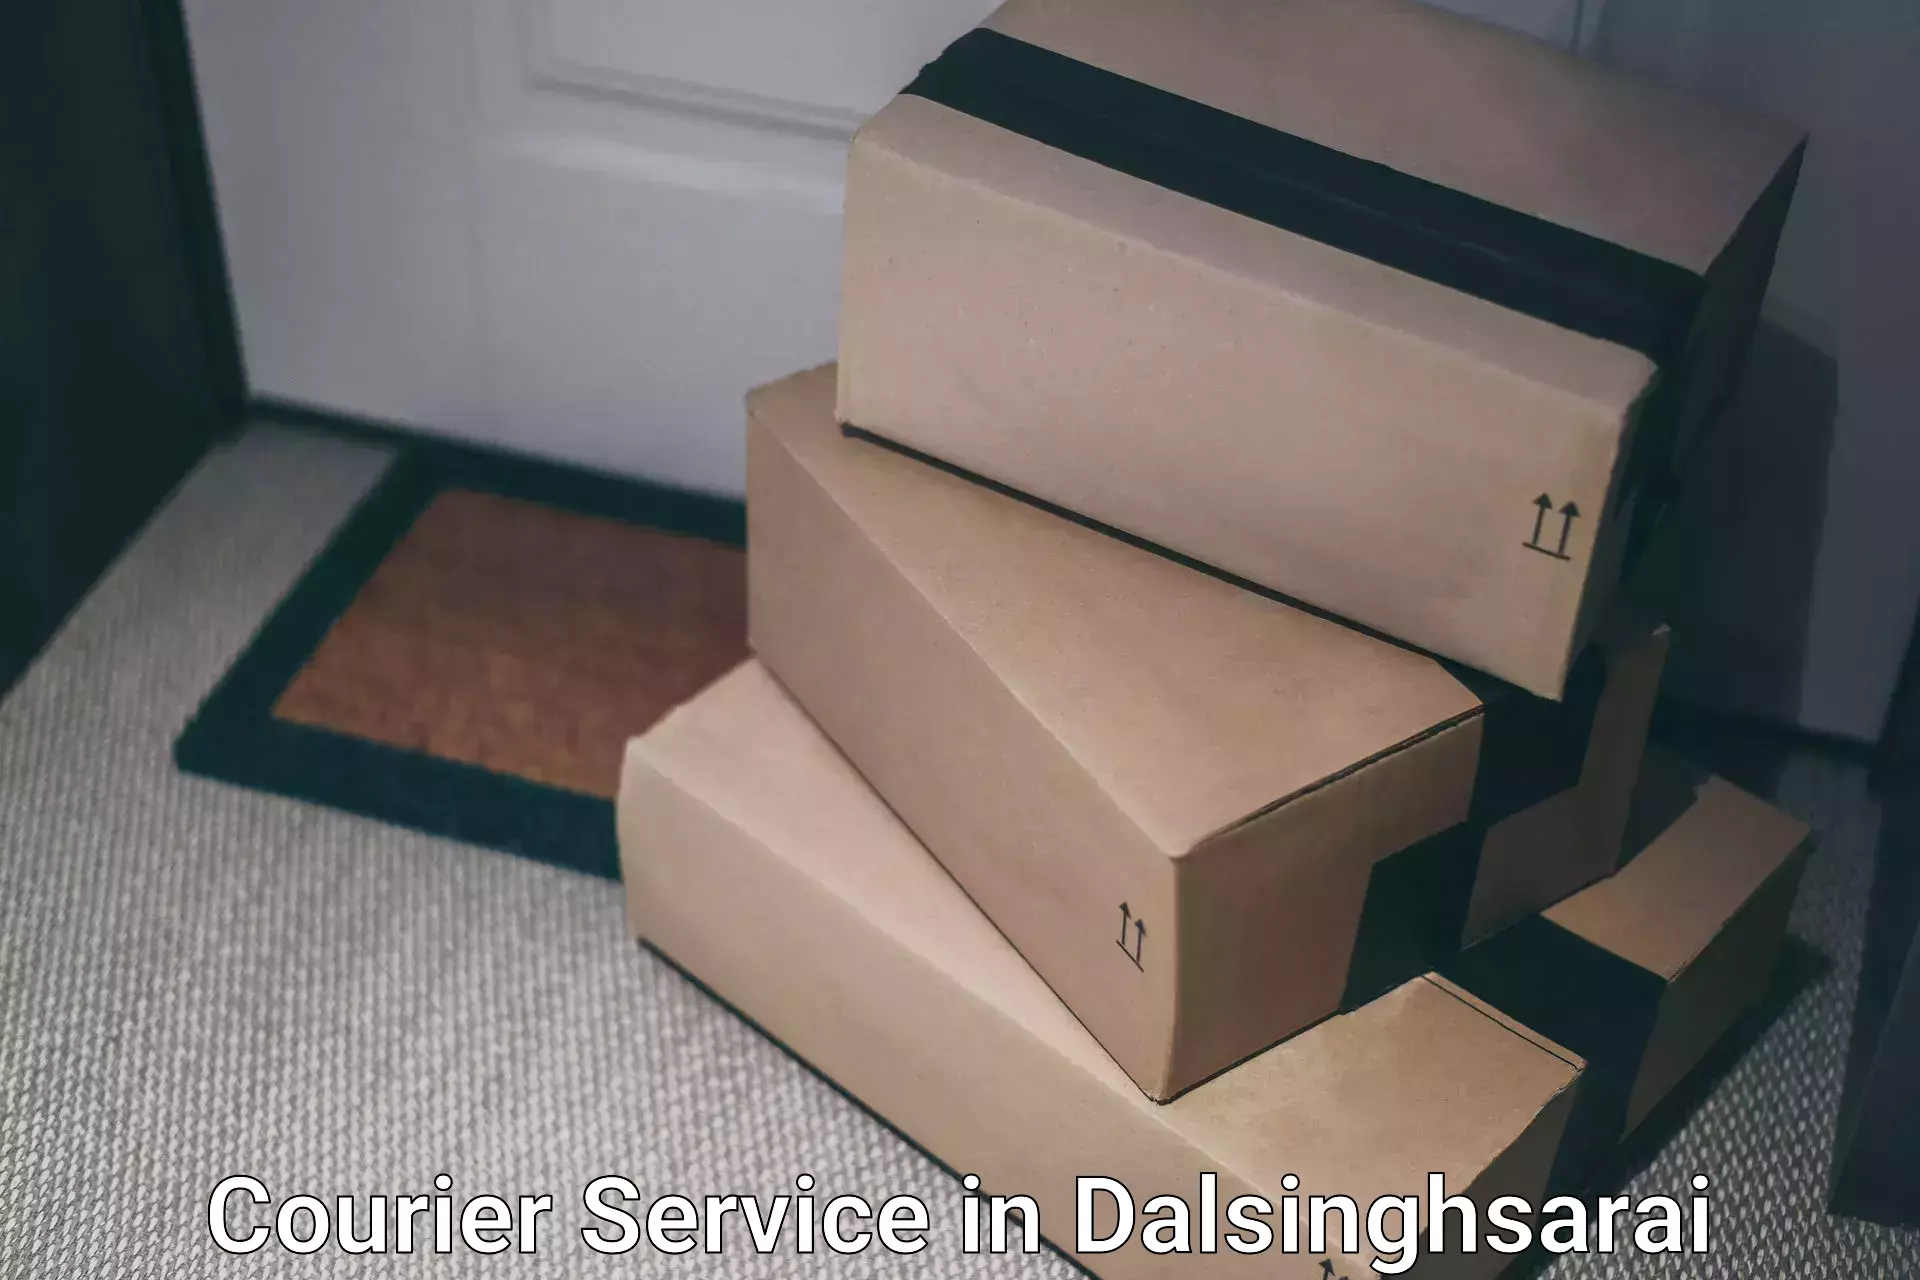 Efficient logistics management in Dalsinghsarai